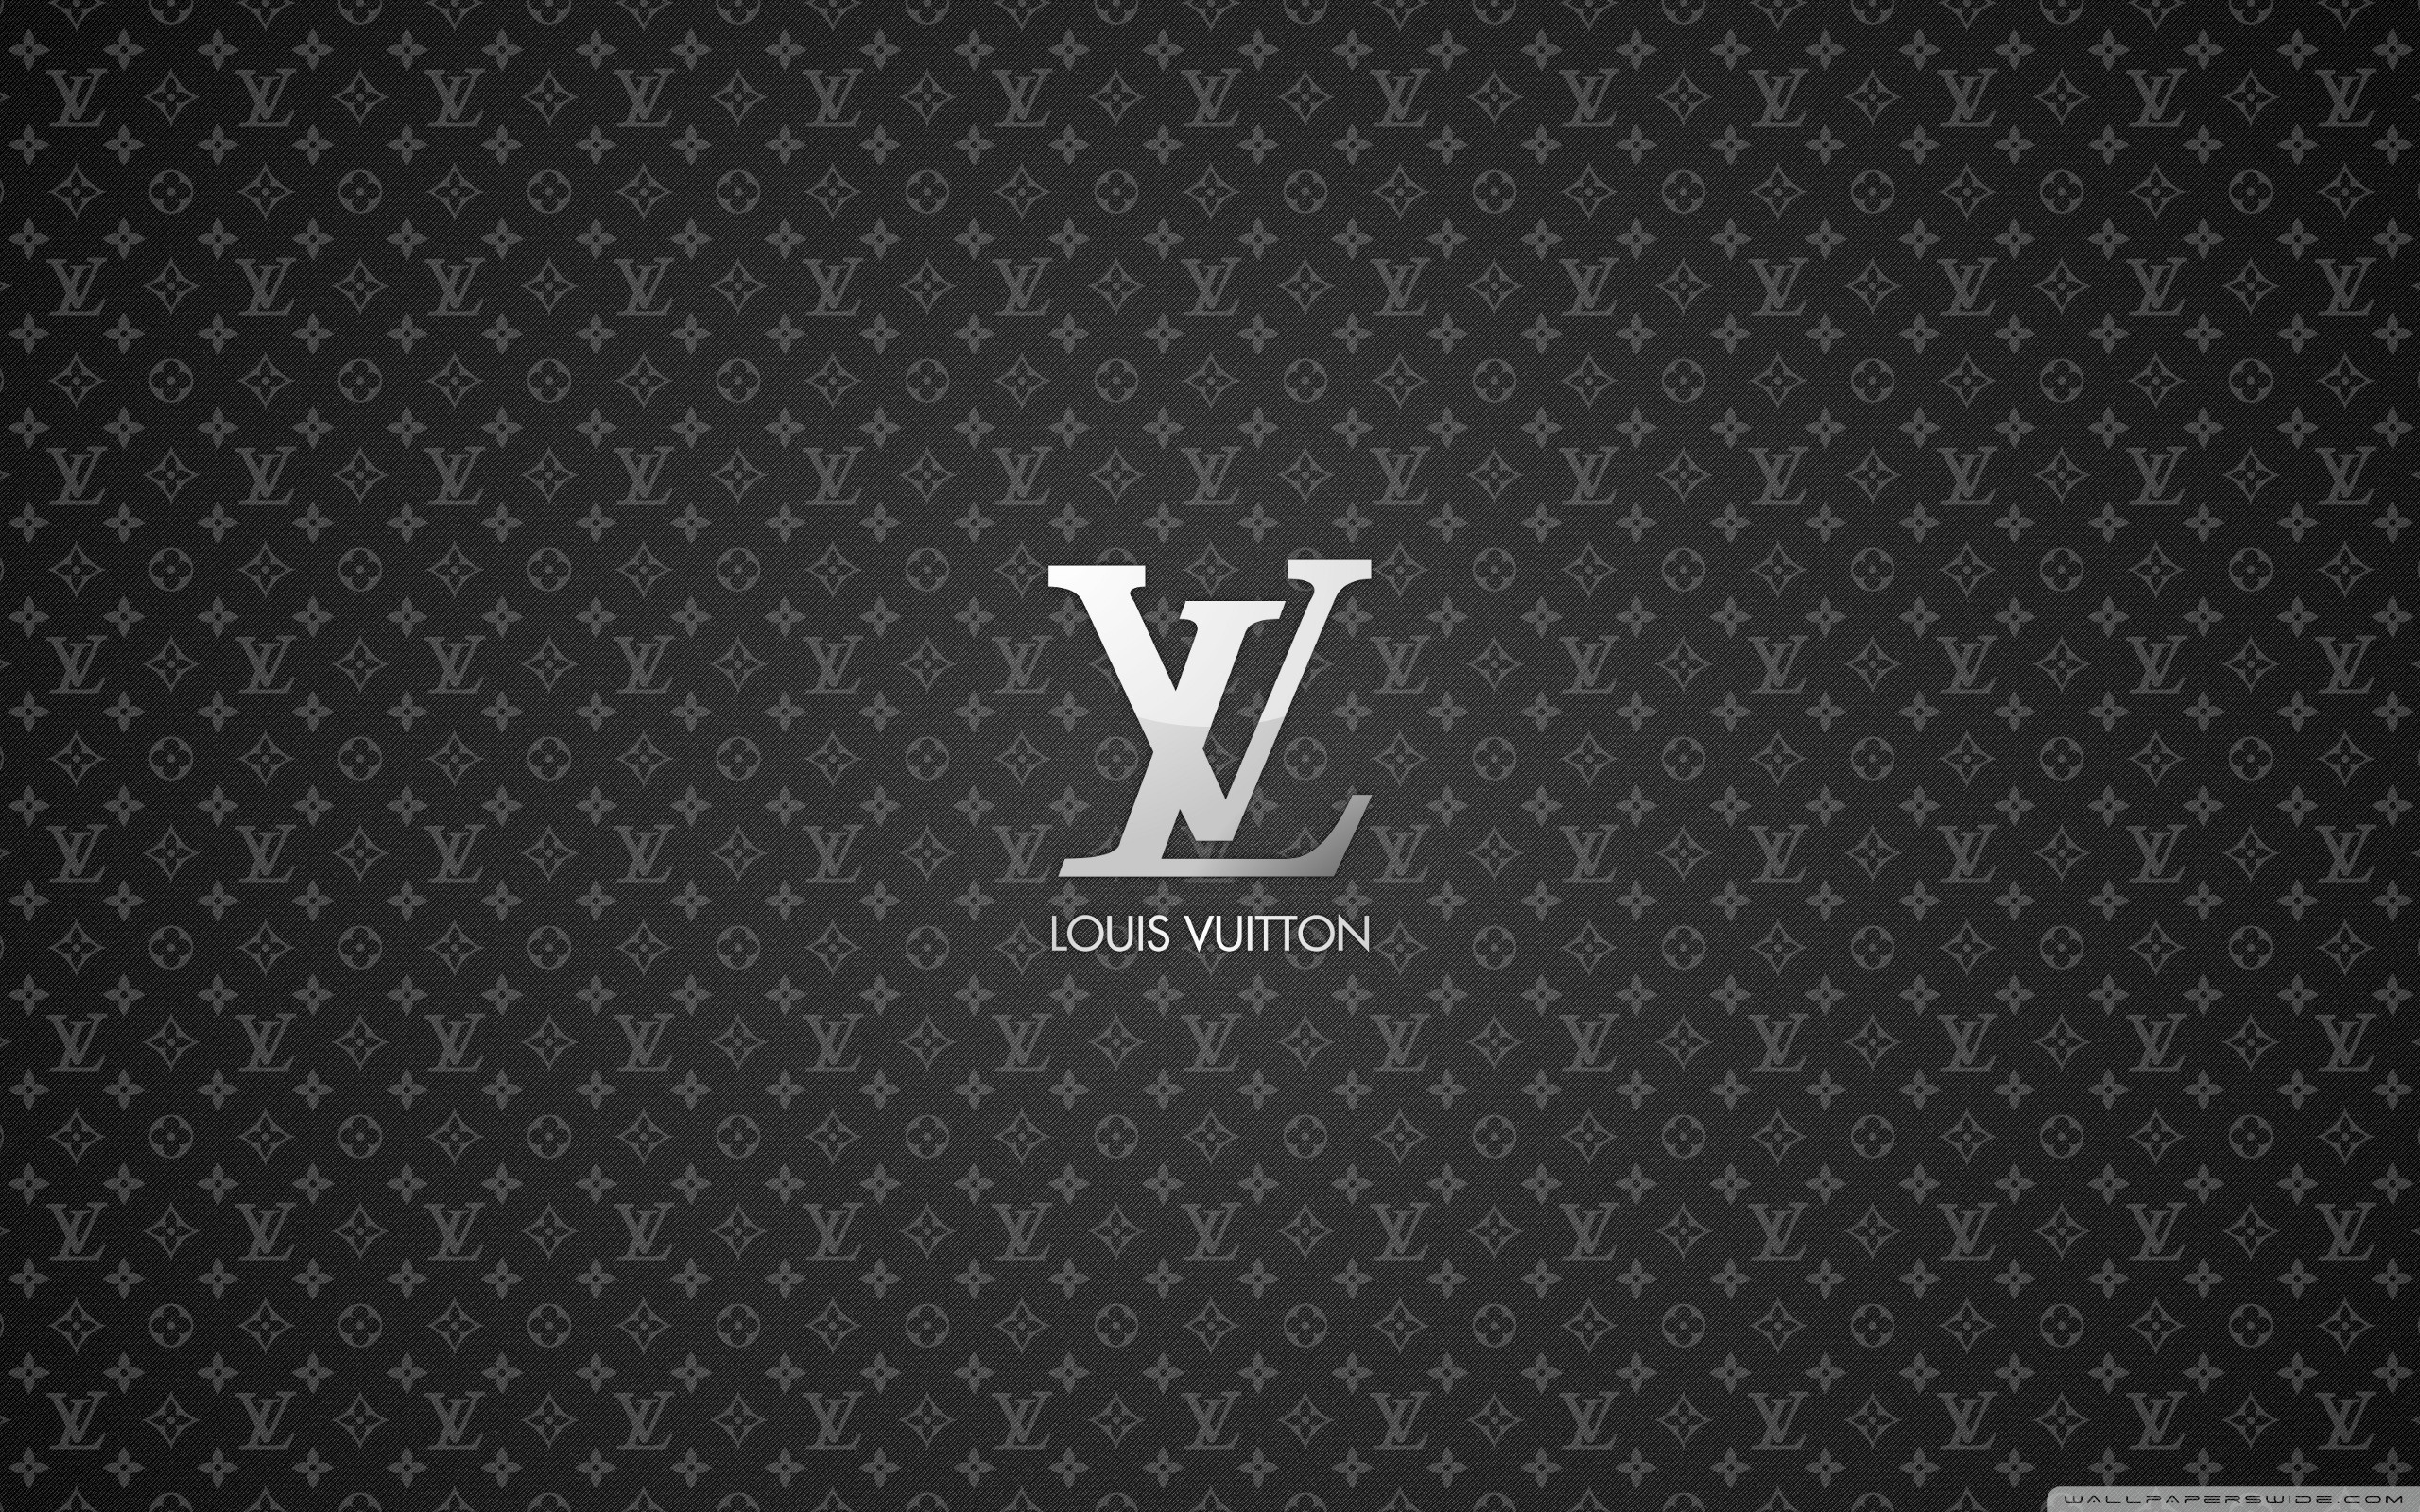 Louis Vuitton Ultra HD Desktop Background Wallpaper for 4K UHD TV